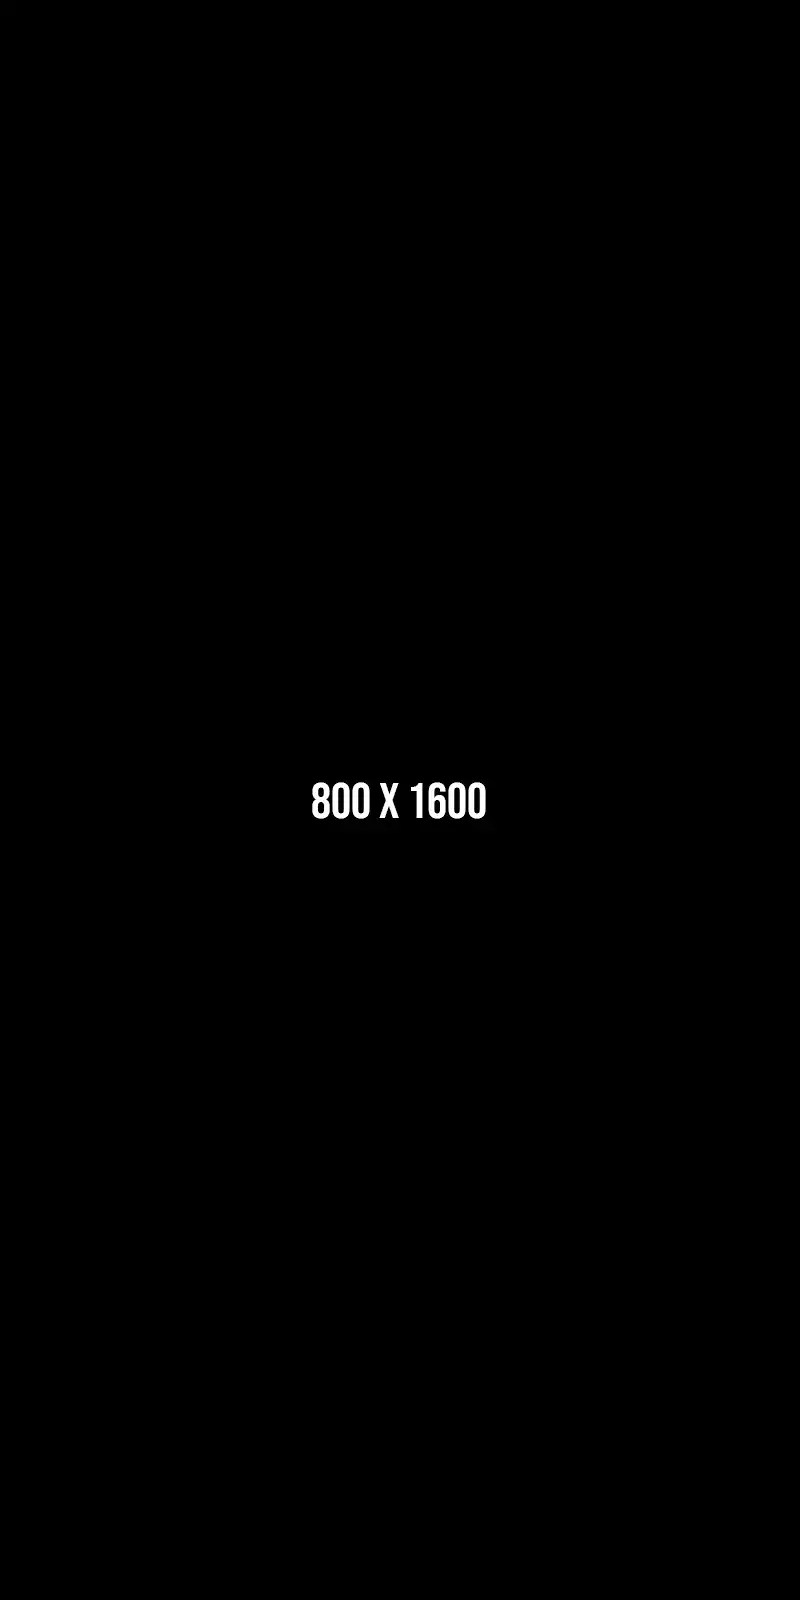 800x1600